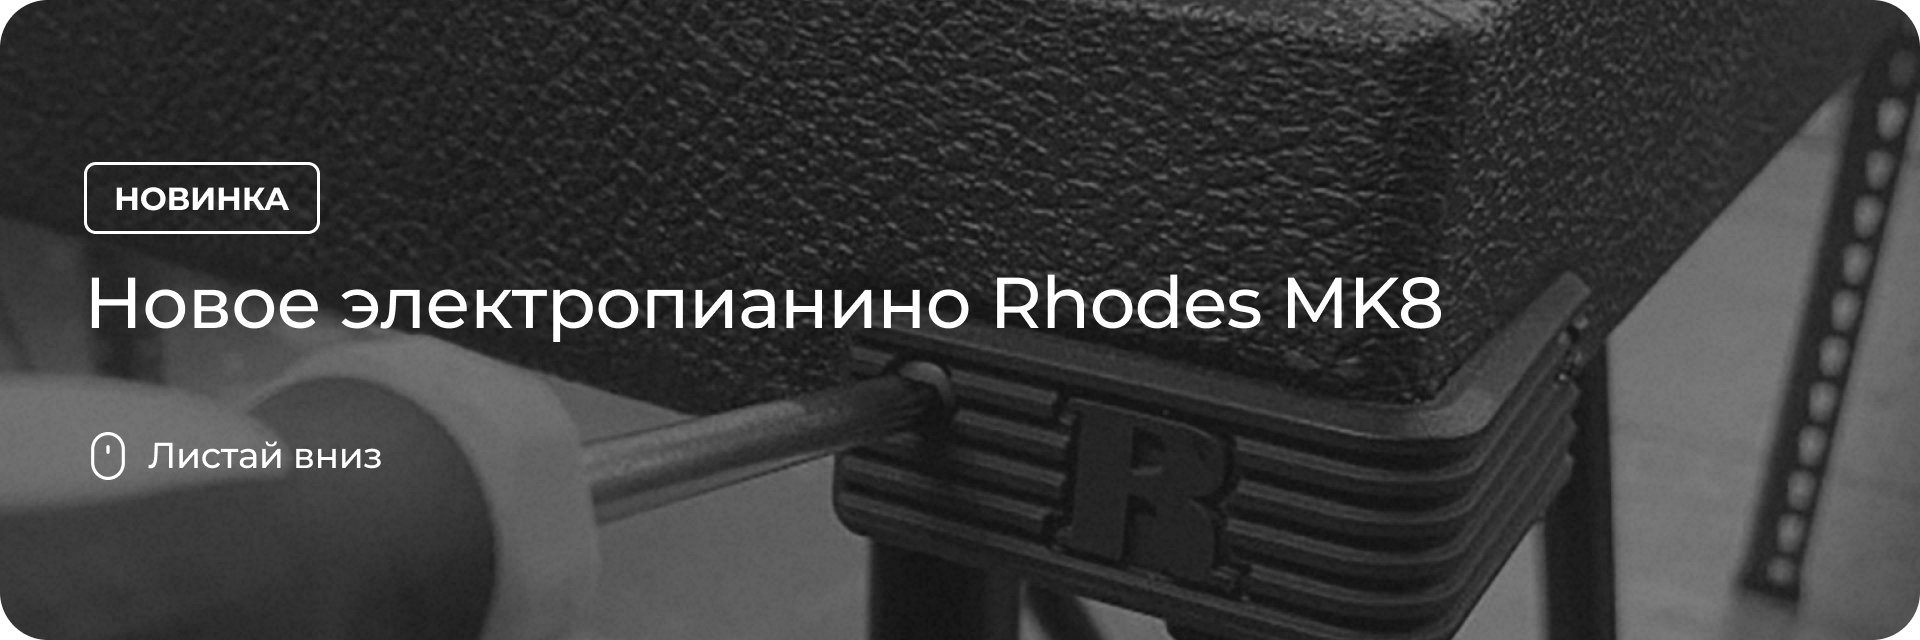 Rhodes MK8